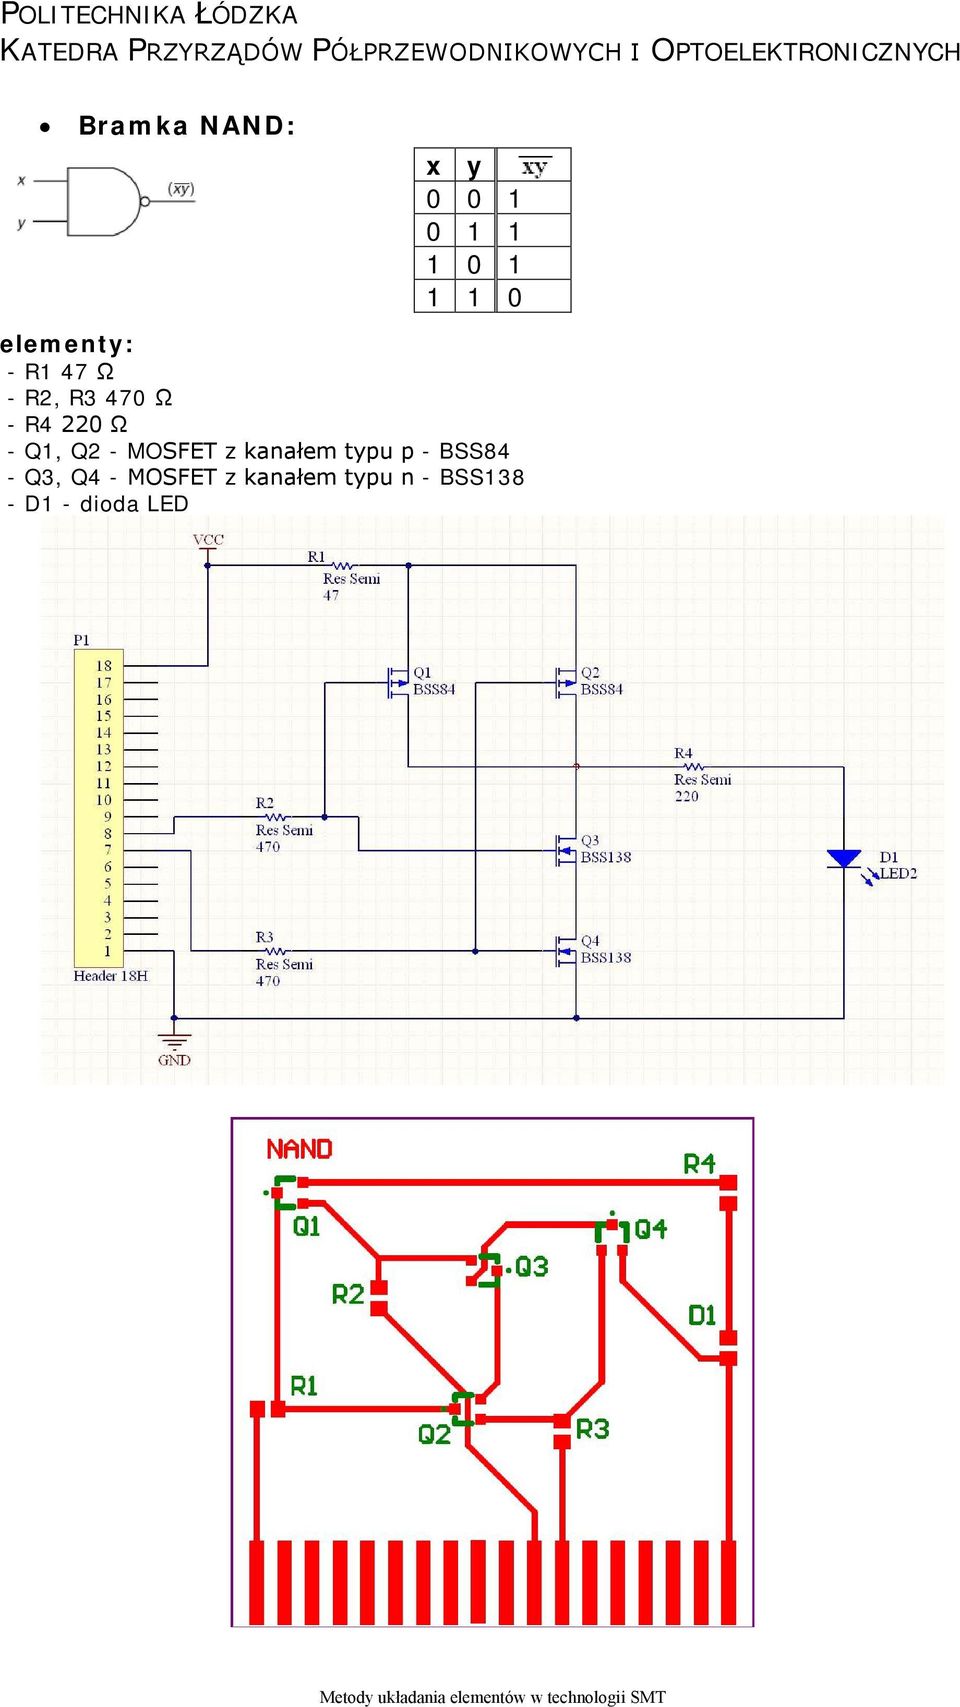 MOSFET z kanałem typu p - BSS84 - Q3, Q4 -